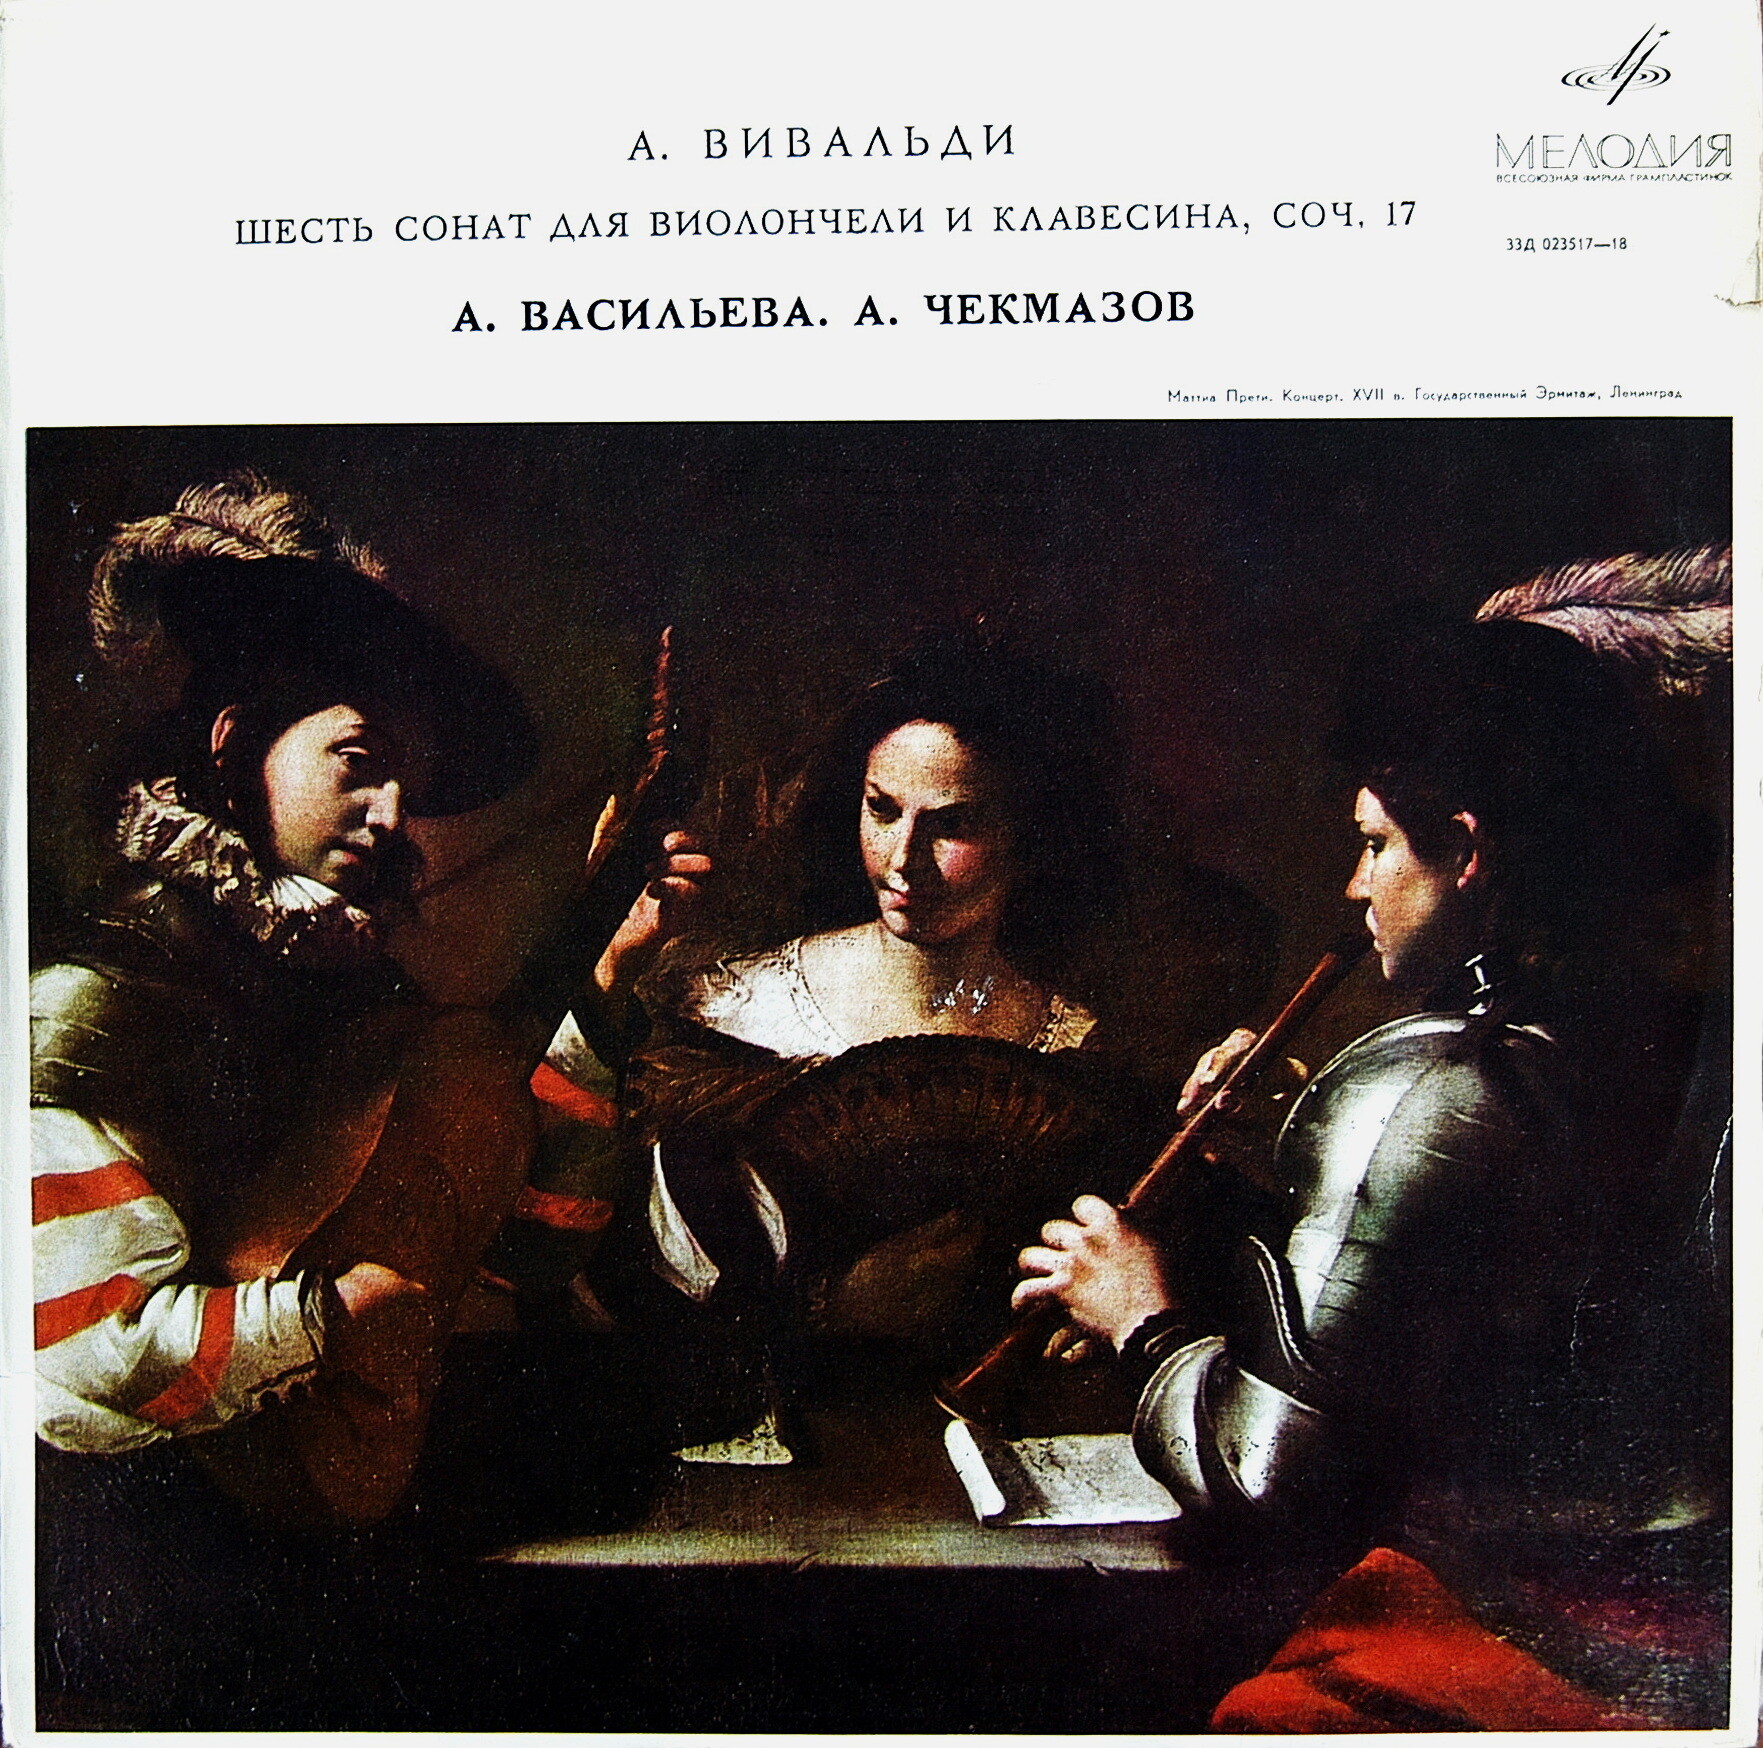 А. Вивальди: Сонаты для виолончели и клавесина № 1—6 (А. Васильева, А. Чекмазов)